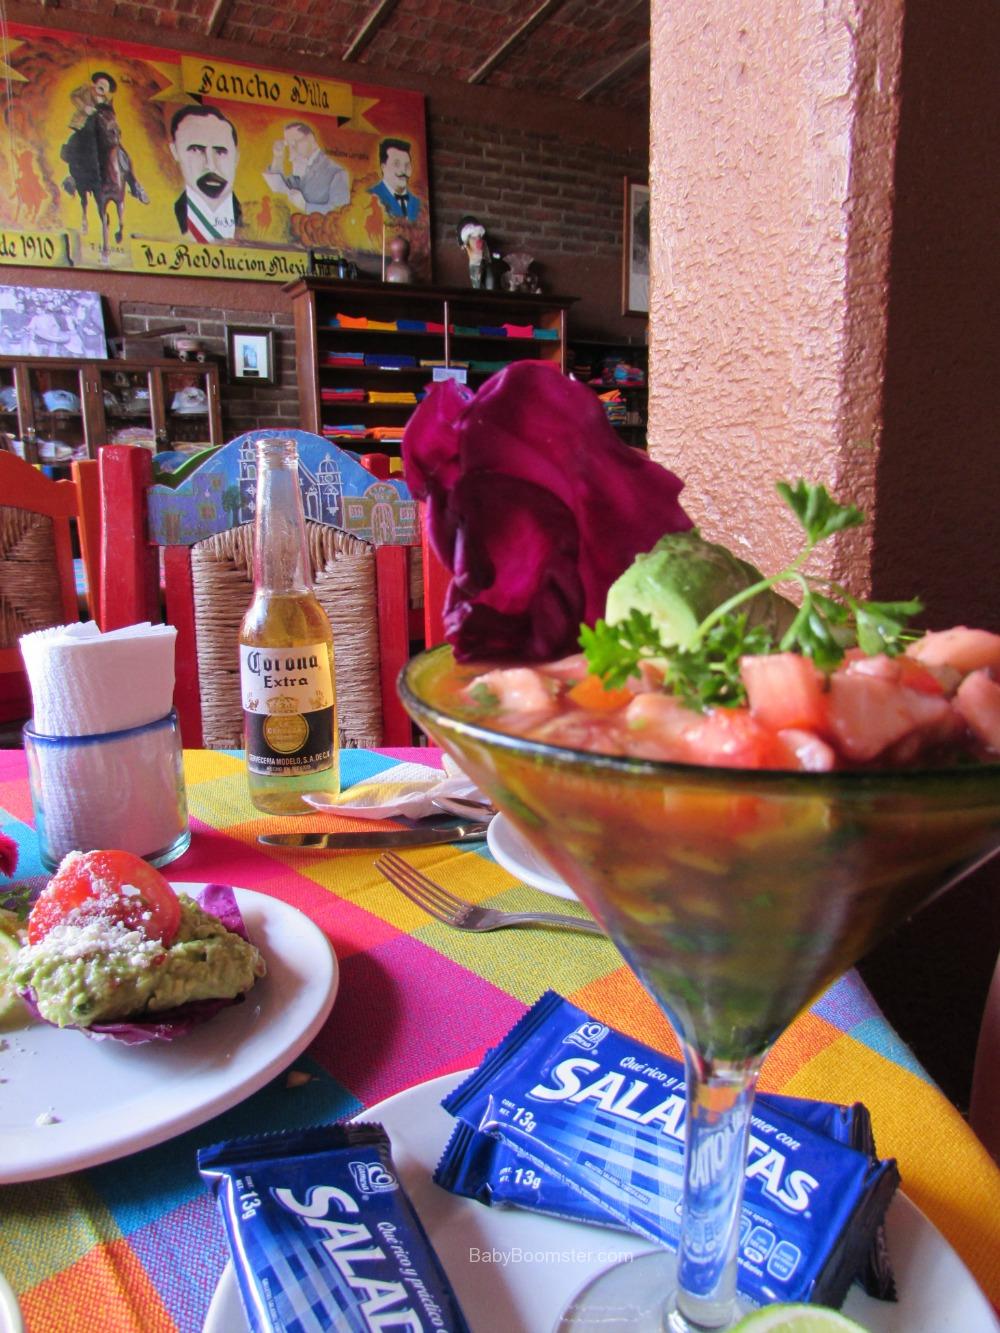 Cabo San Lucas - Mexico - Panchos Restaurant